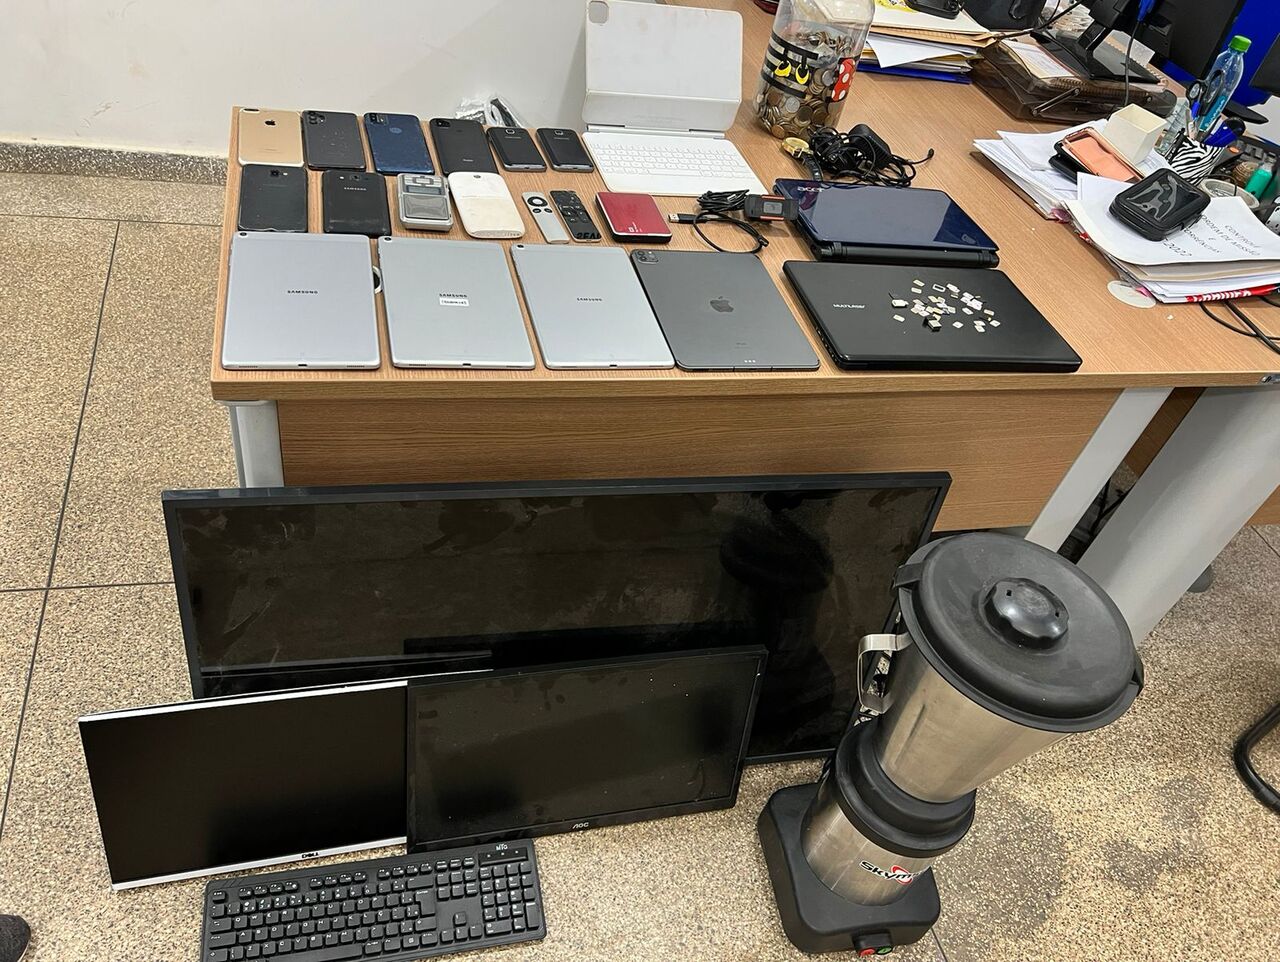 Polícia investiga furto em clínica e prende homem vários equipamentos eletrônicos